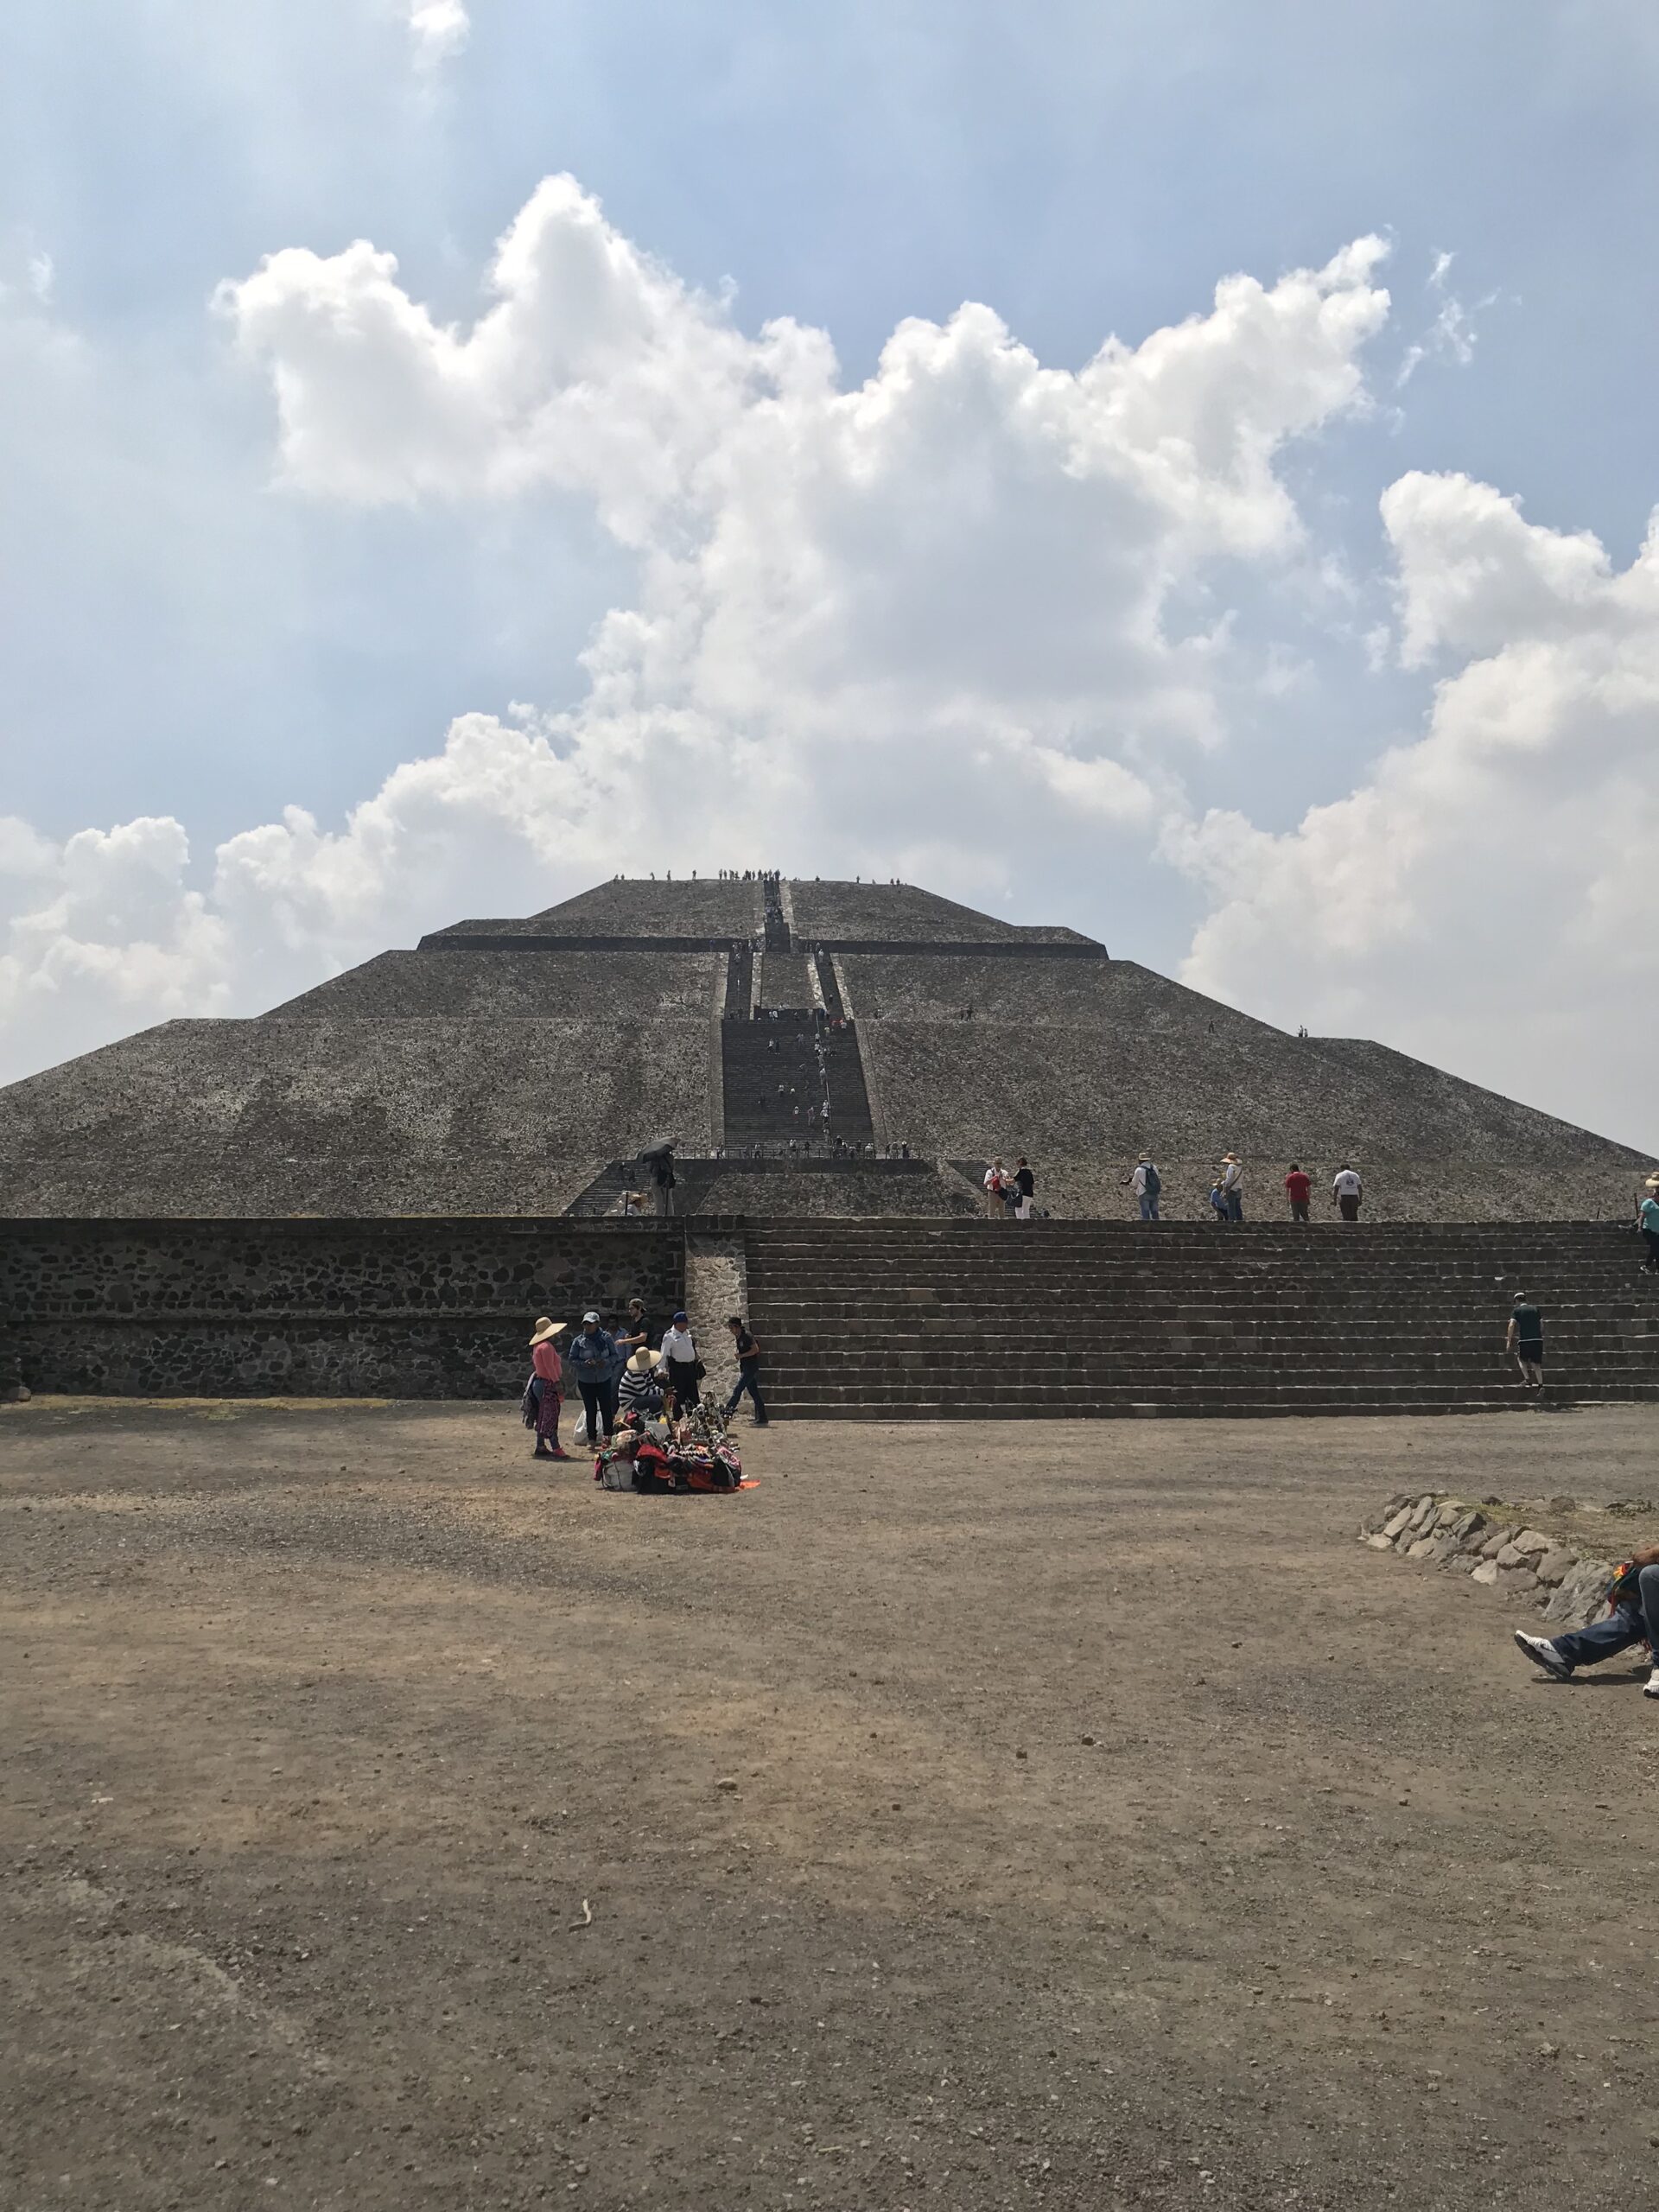 Pirámide del sol, 31 actividades que hacer en cdmx